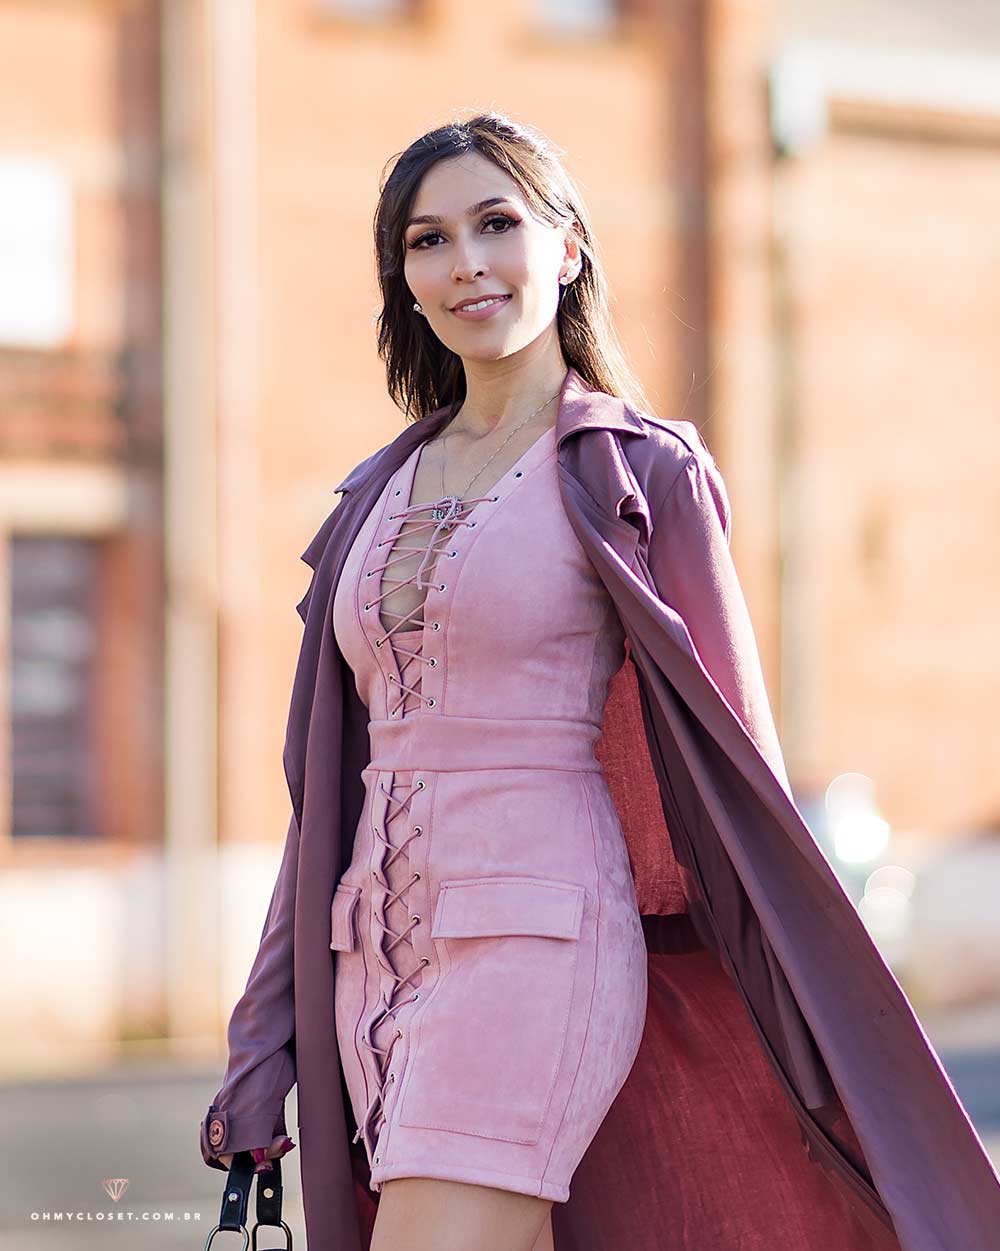 Detalhes do look da influencer Mônica Araújo com vestido de suede Ali Express.